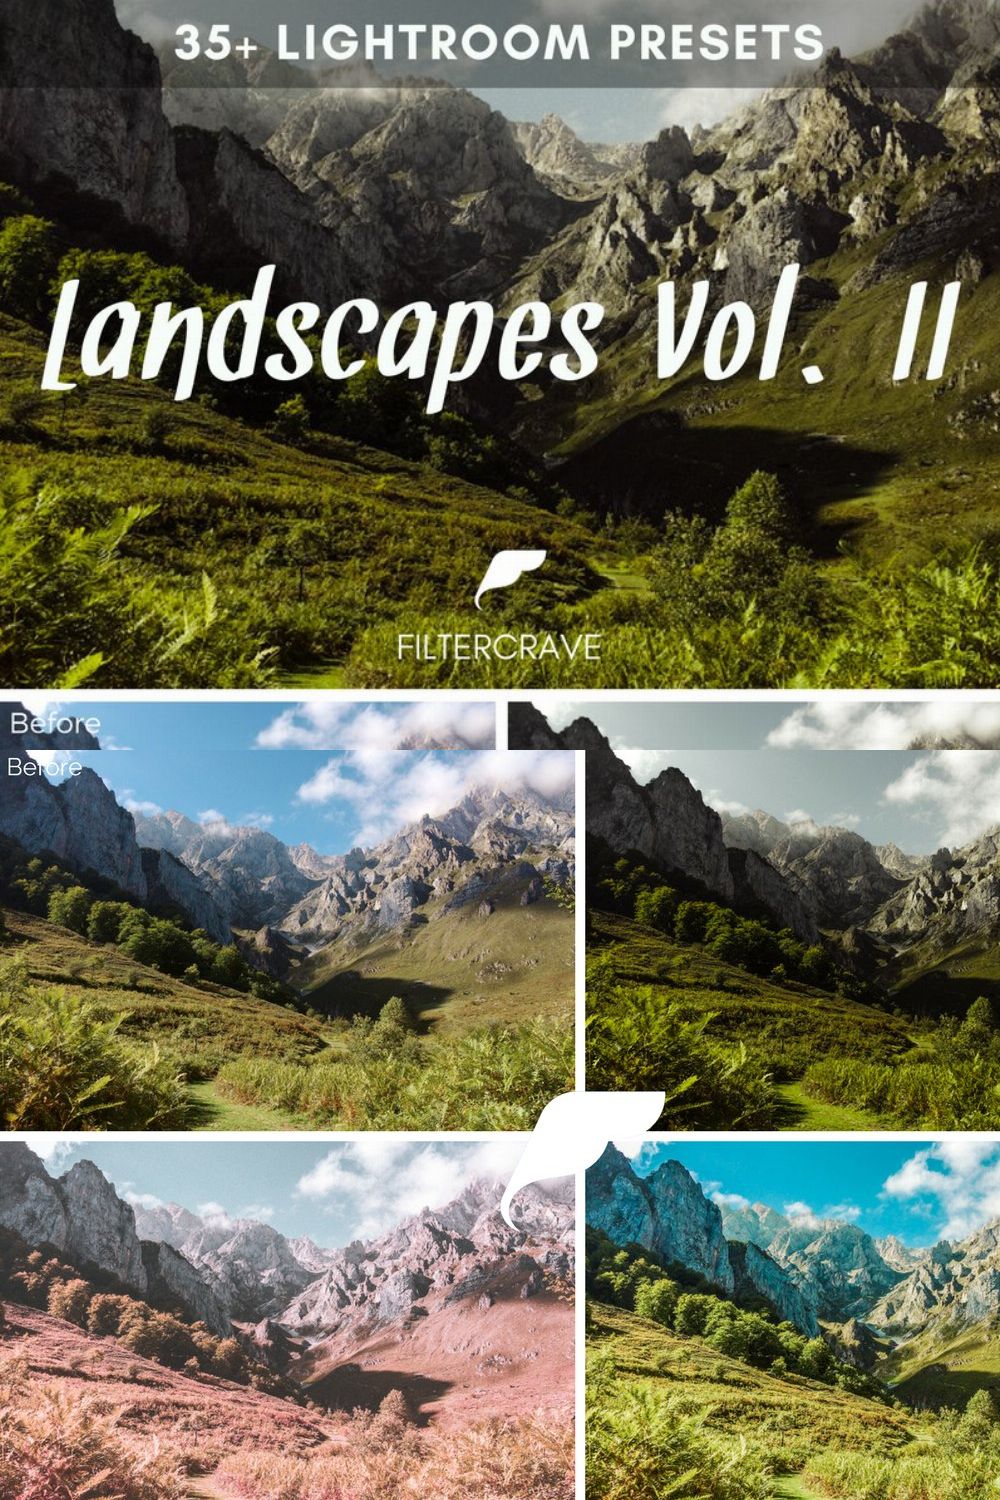 Landscape Lightroom Presets Vol. II pinterest preview image.